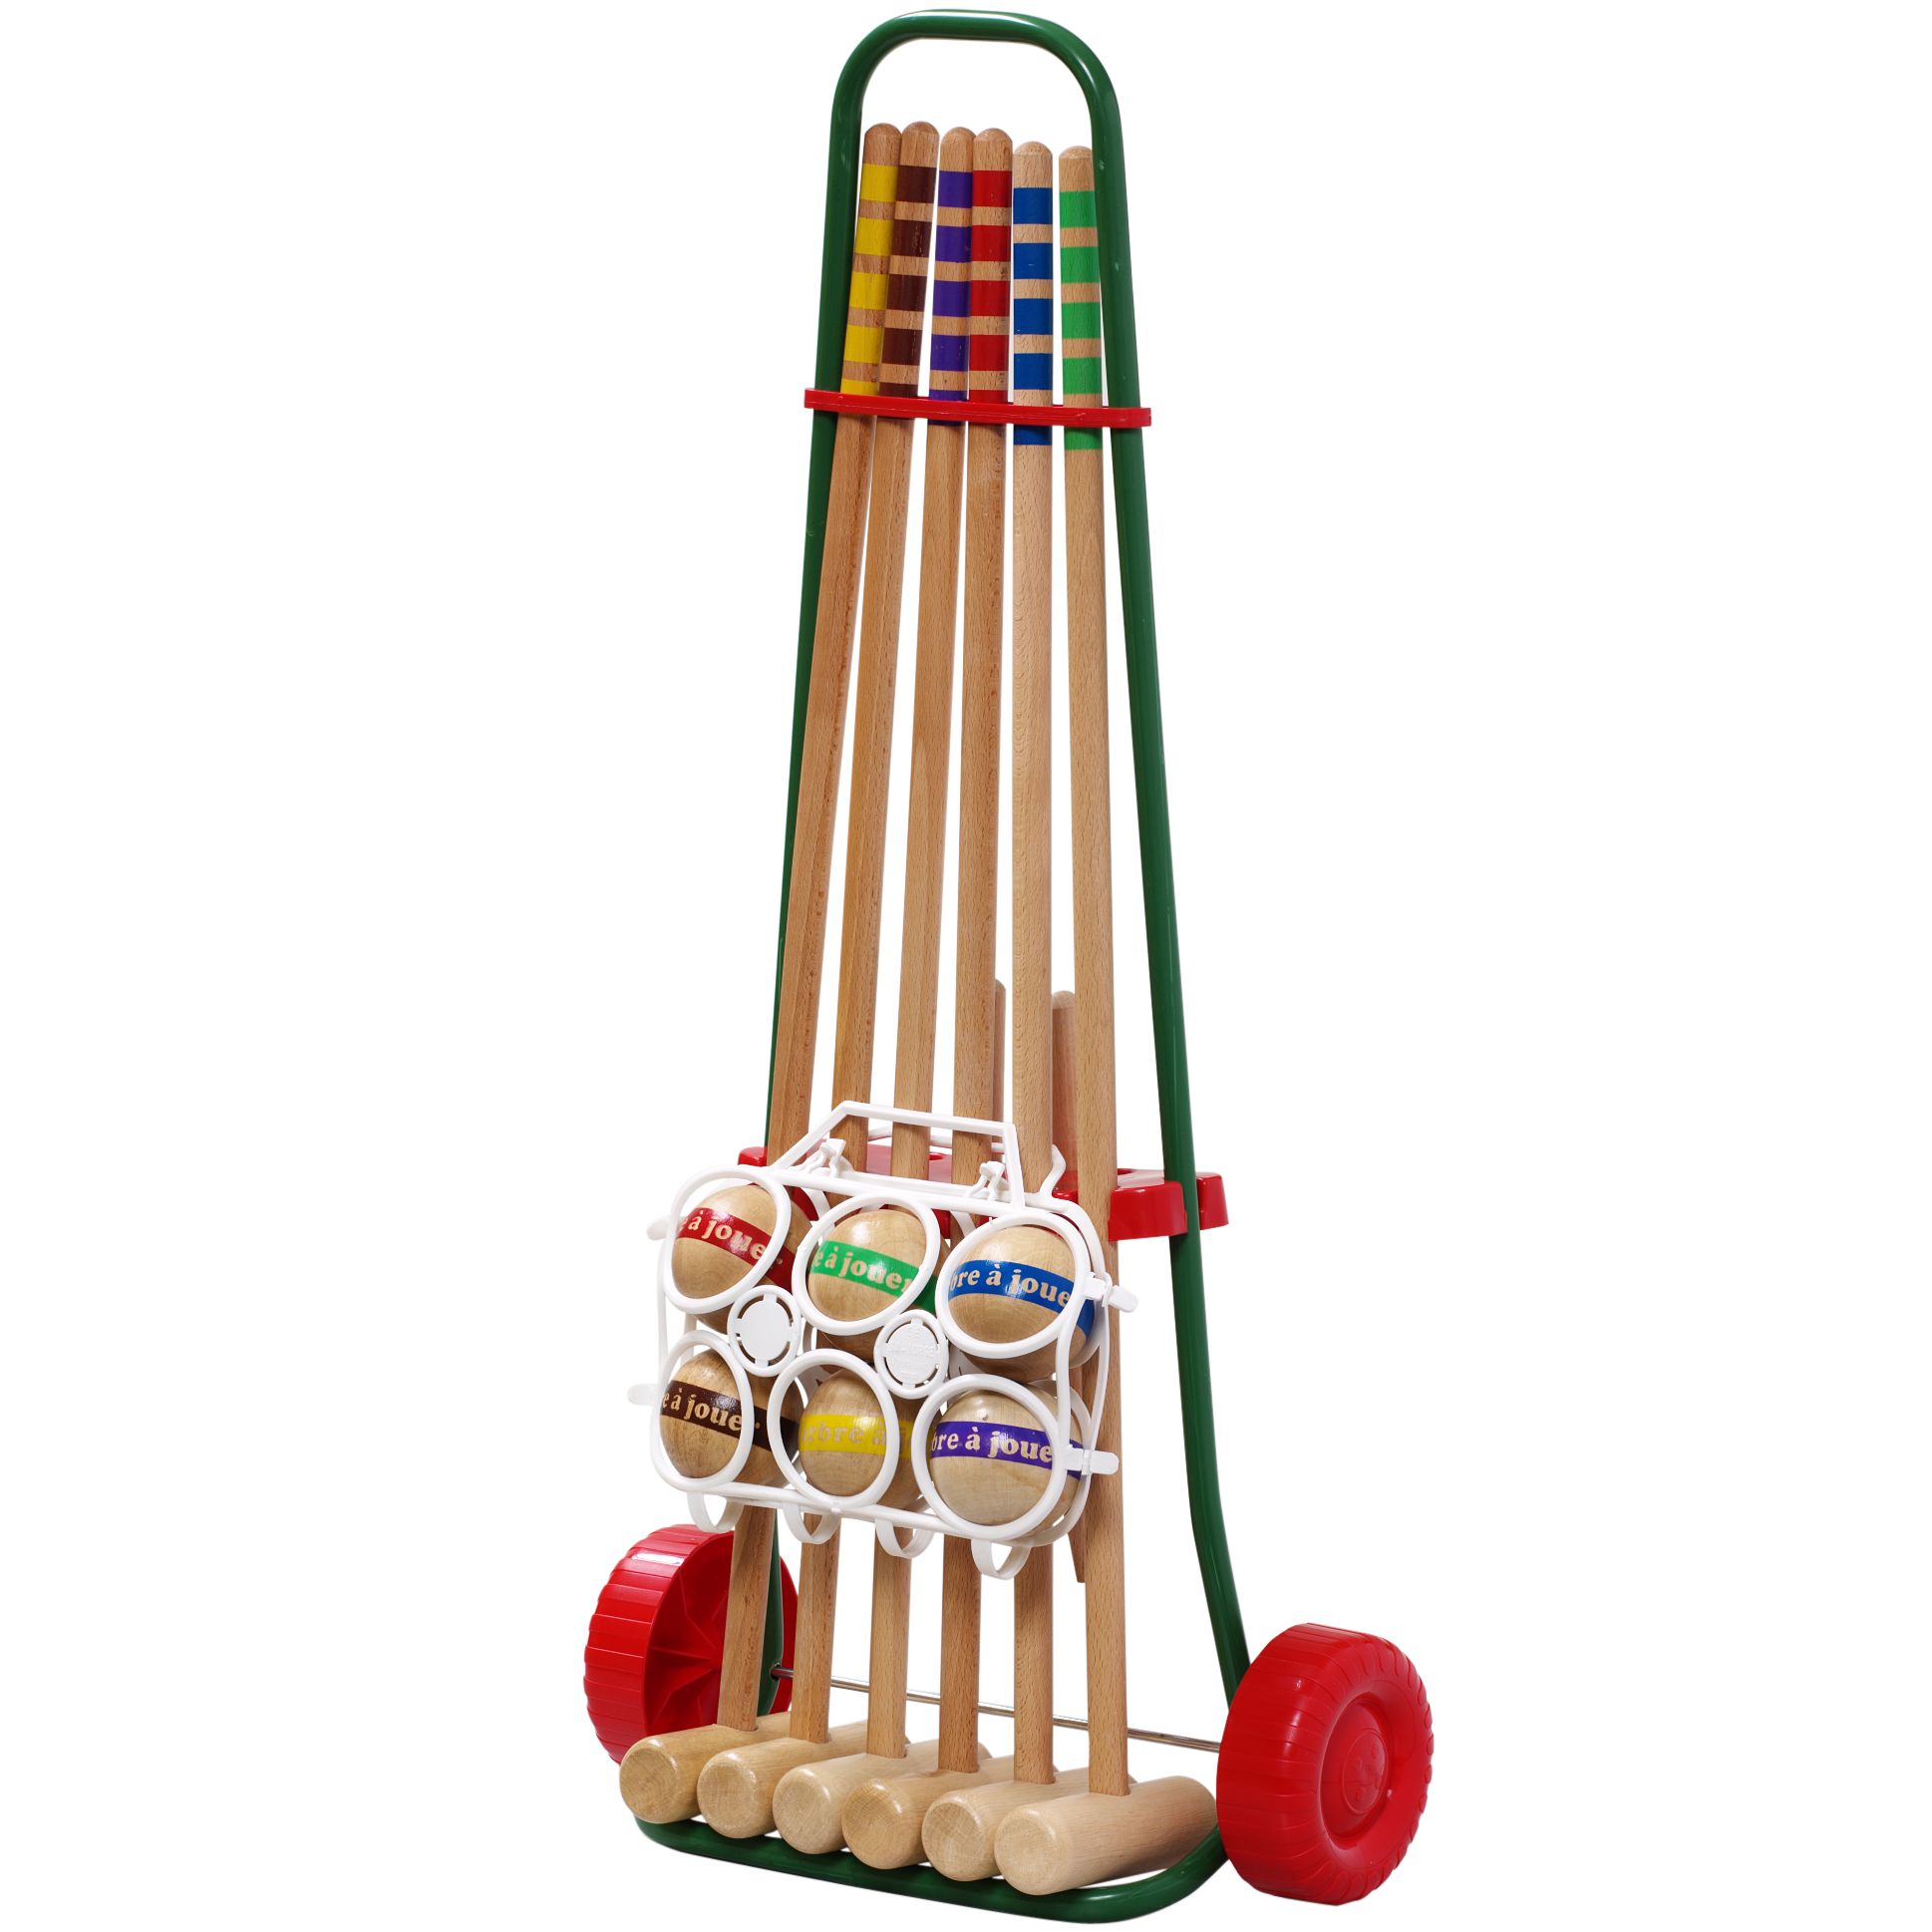 Children's Croquet Set, 6 Player